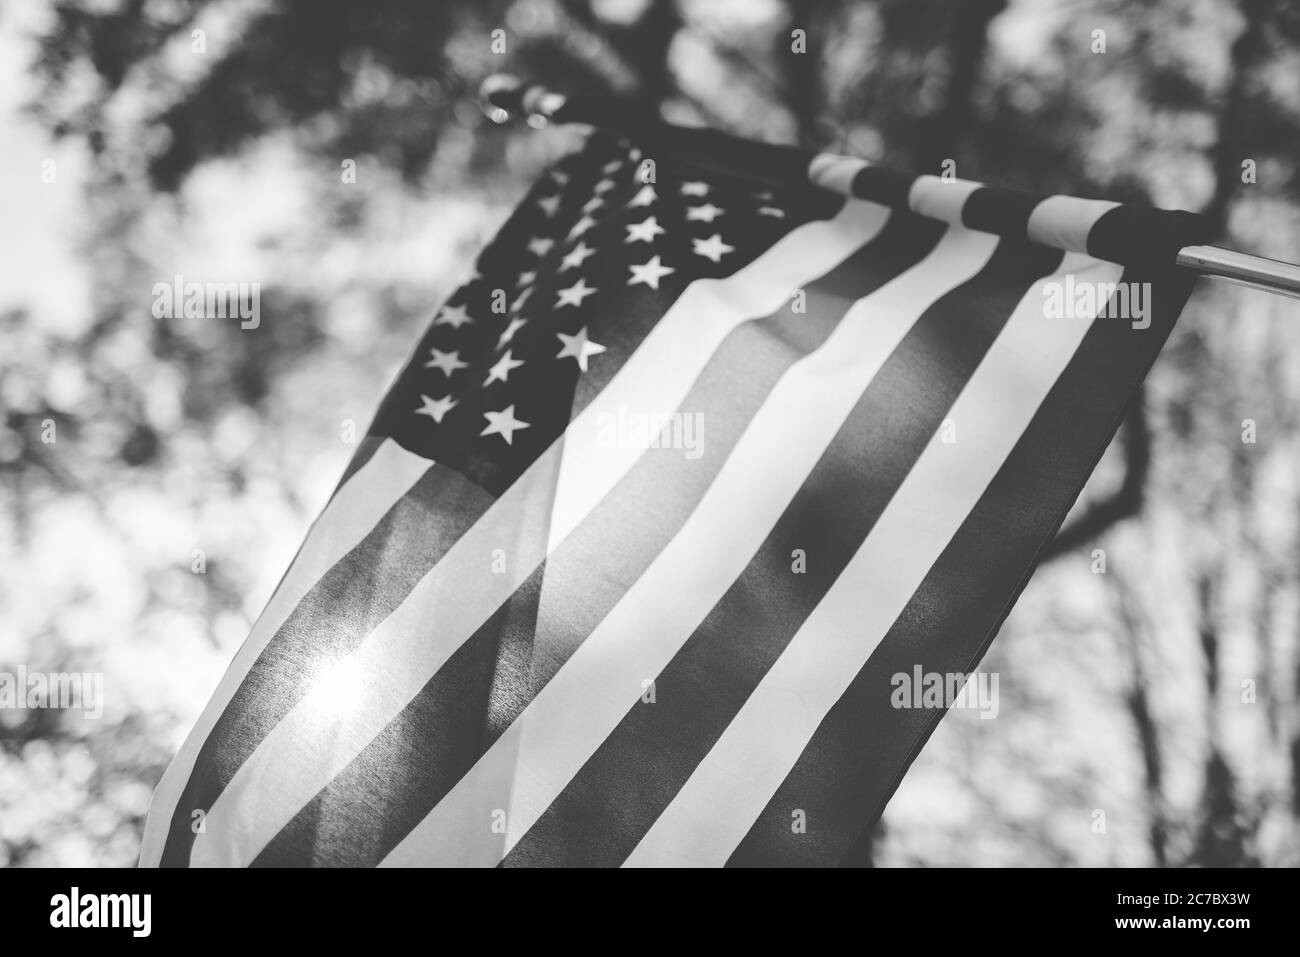 Prise de vue en bas angle du drapeau des états-unis avec un arrière-plan flou en noir et blanc Banque D'Images